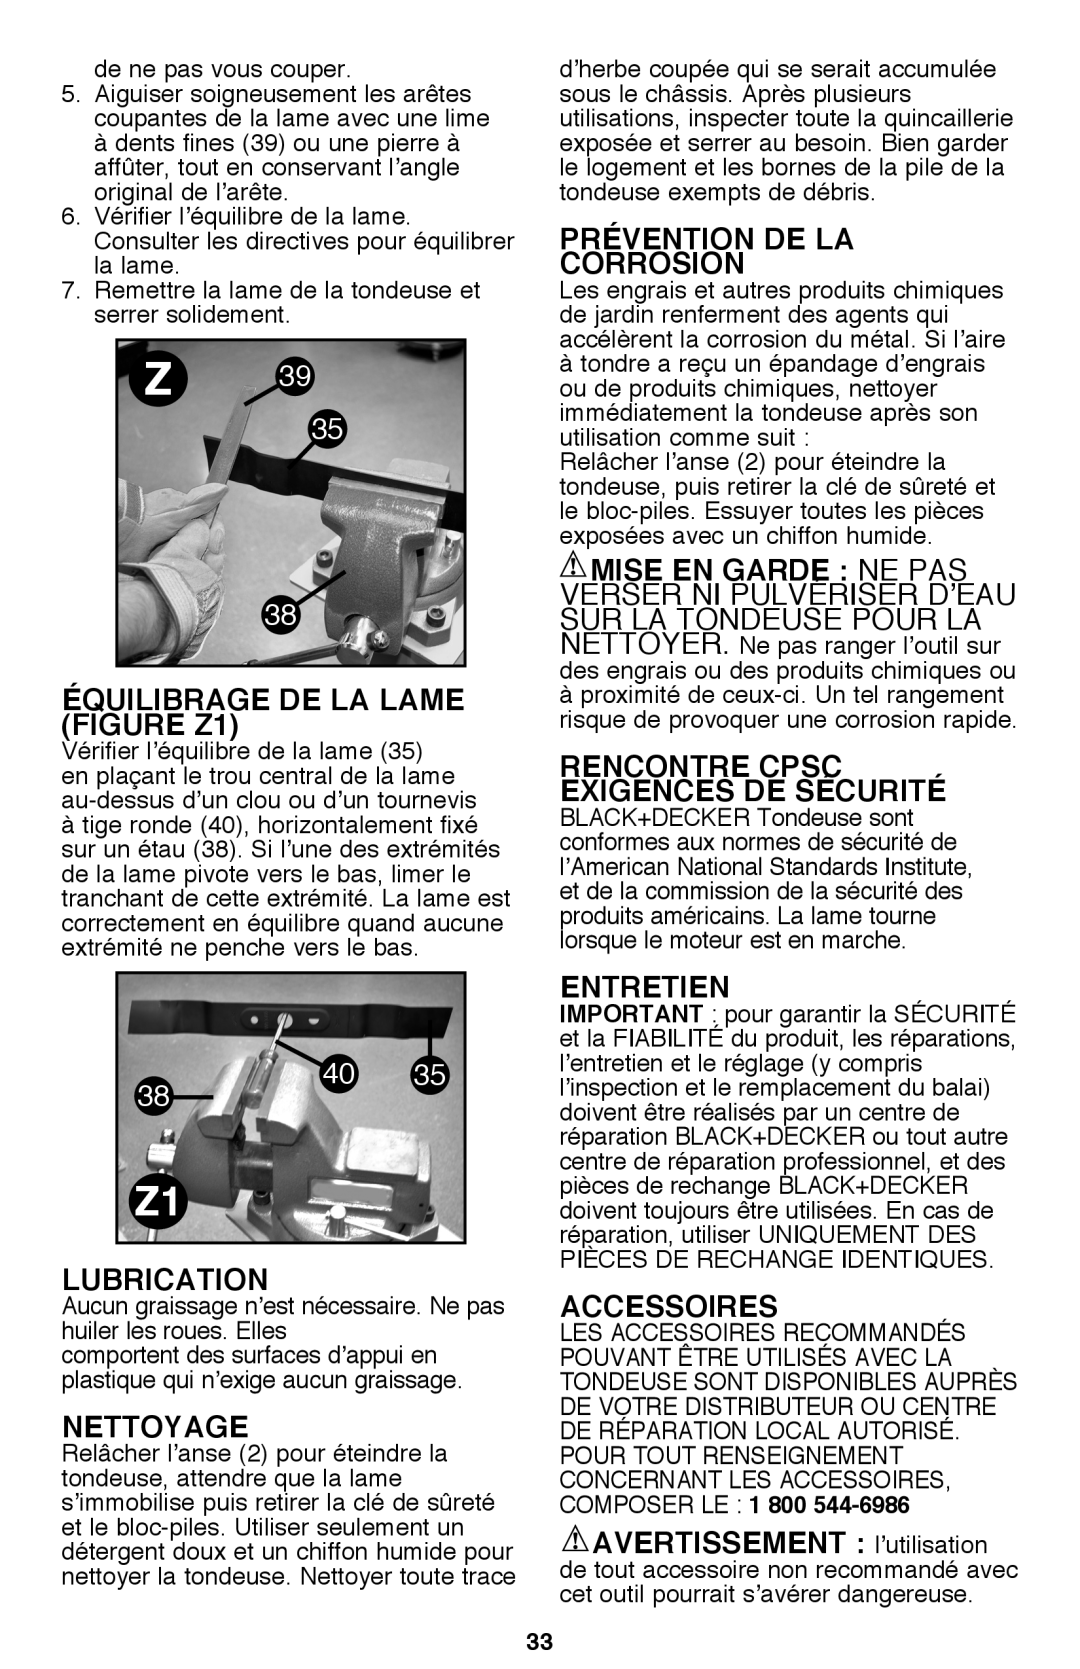 Black & Decker CM2040 ÉQUILIBRAGE DE LA LAME FIGURE Z1, Lubrication, Nettoyage, Prévention De La Corrosion, Entretien 